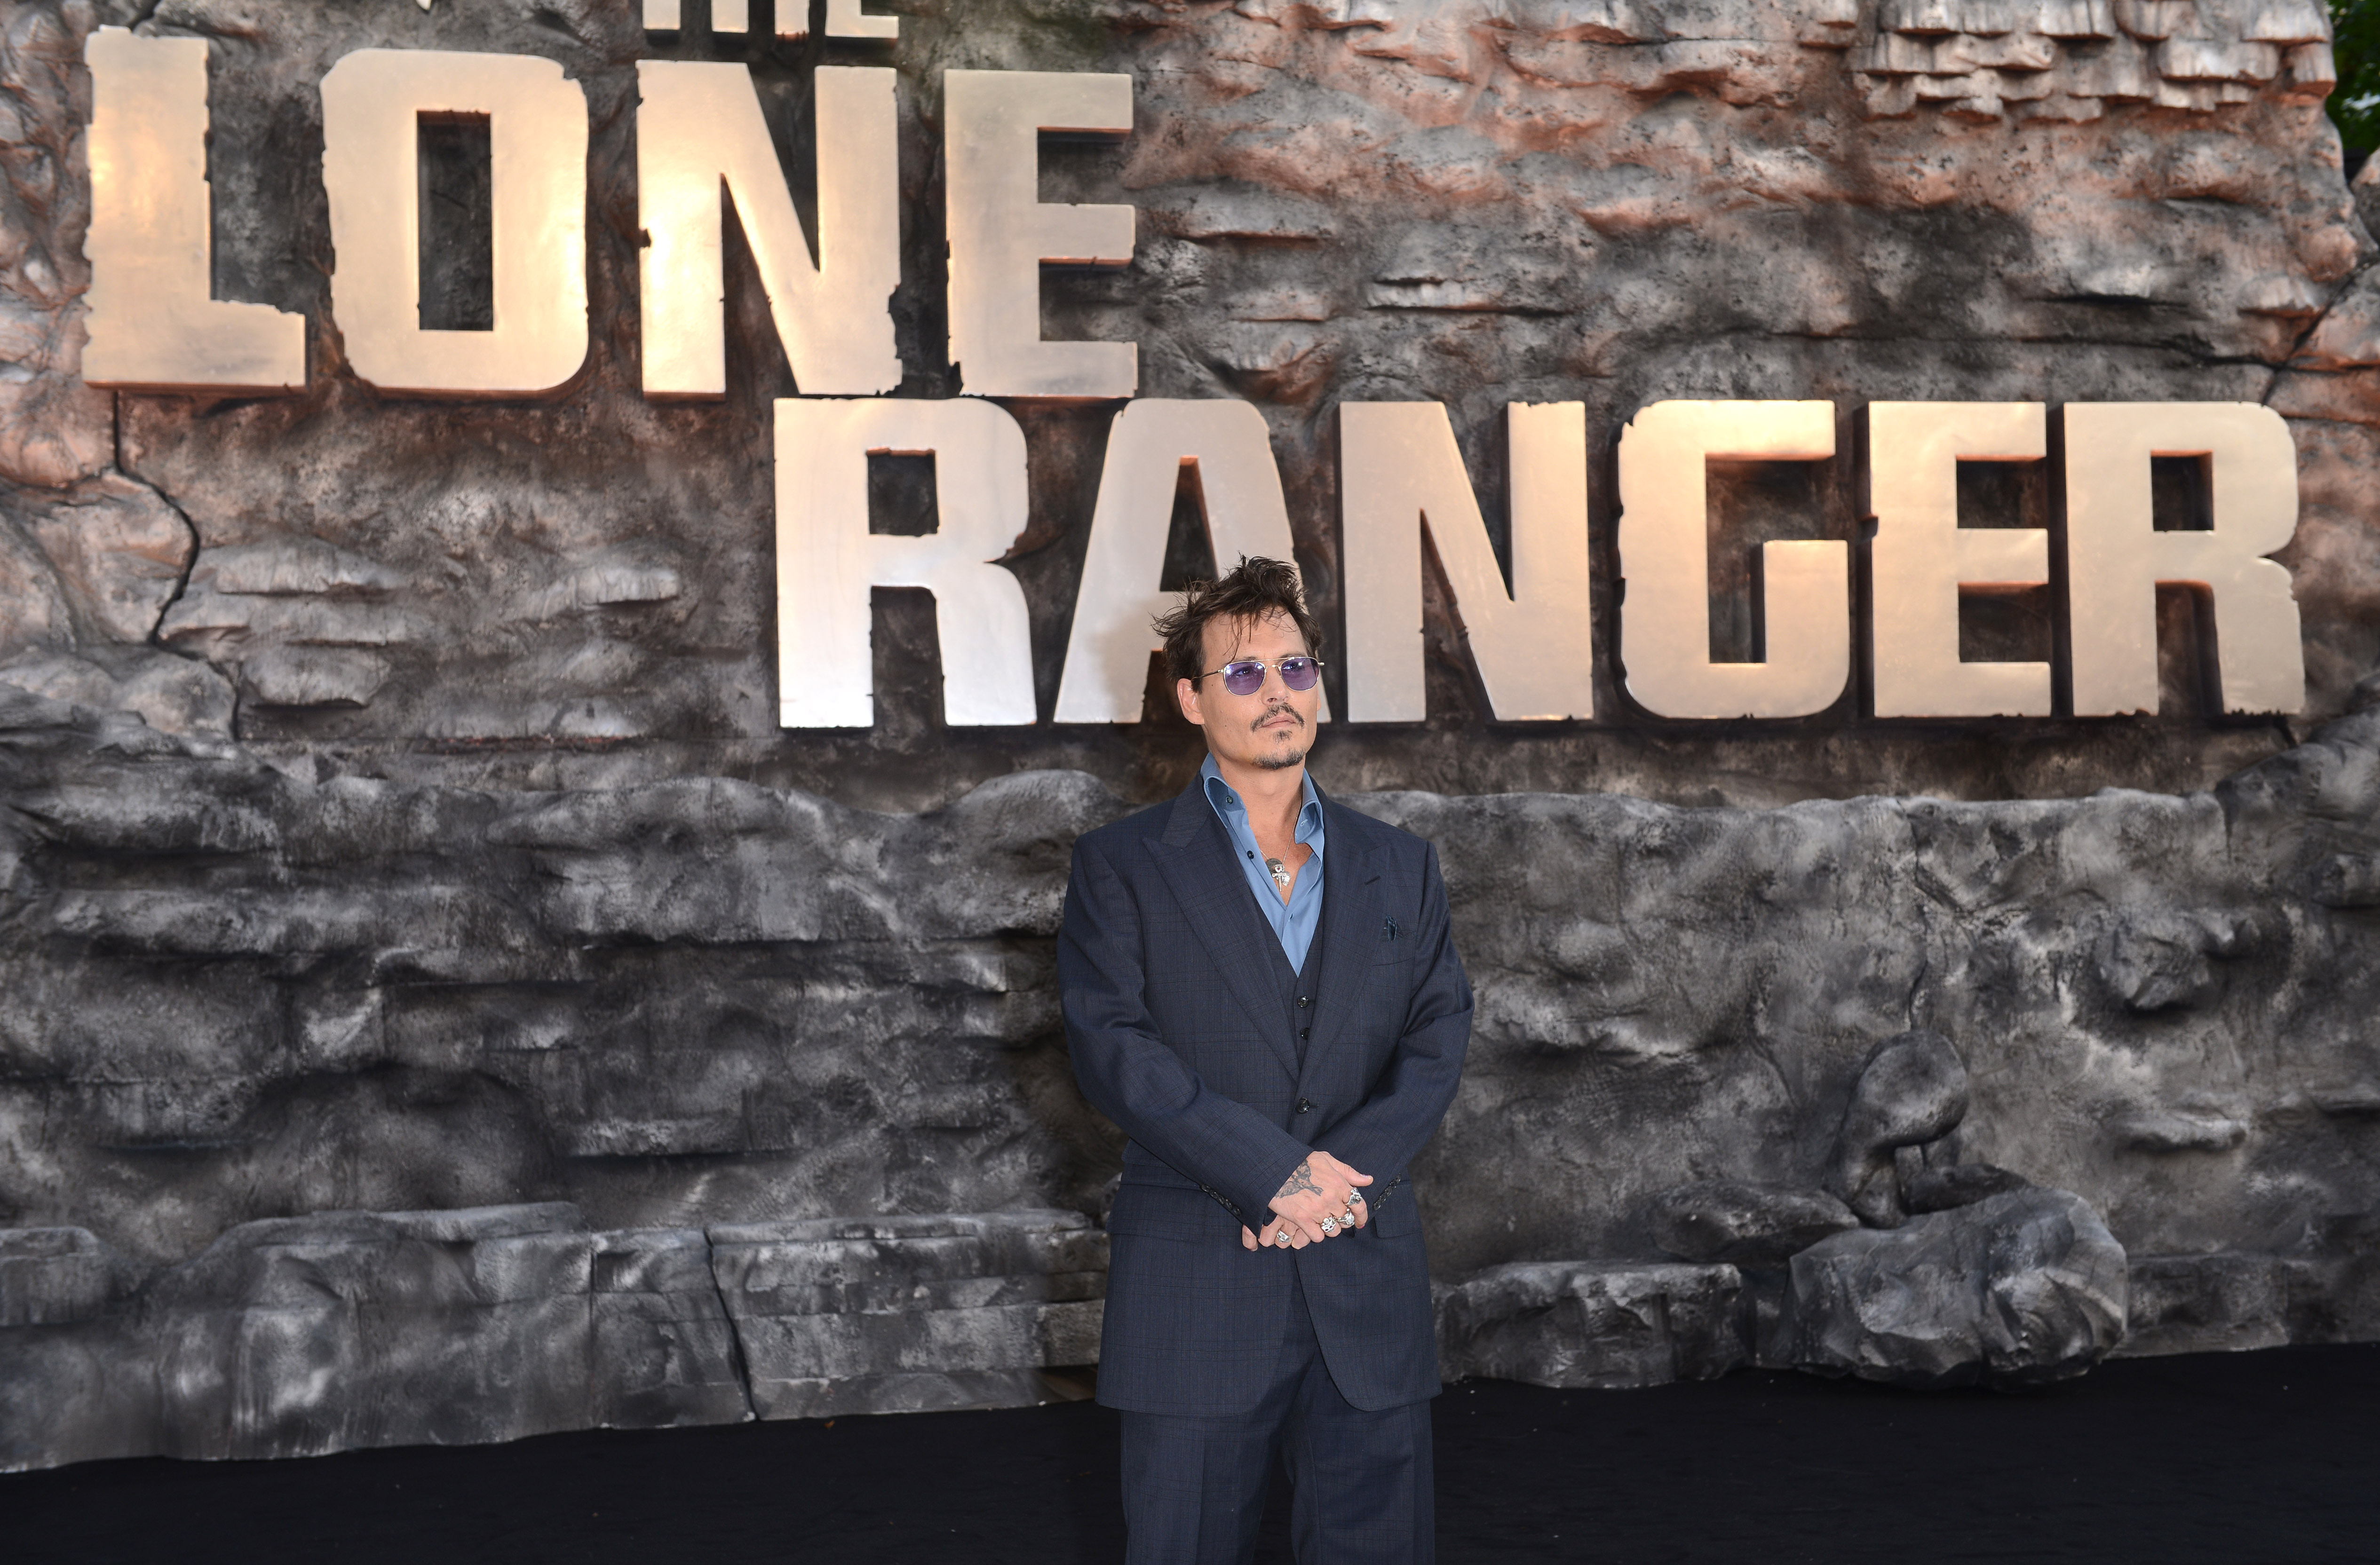 Johnny Depp bei der britischen Premiere von "The Lone Ranger" in London, England am 21. Juli 2013 | Quelle: Getty Images